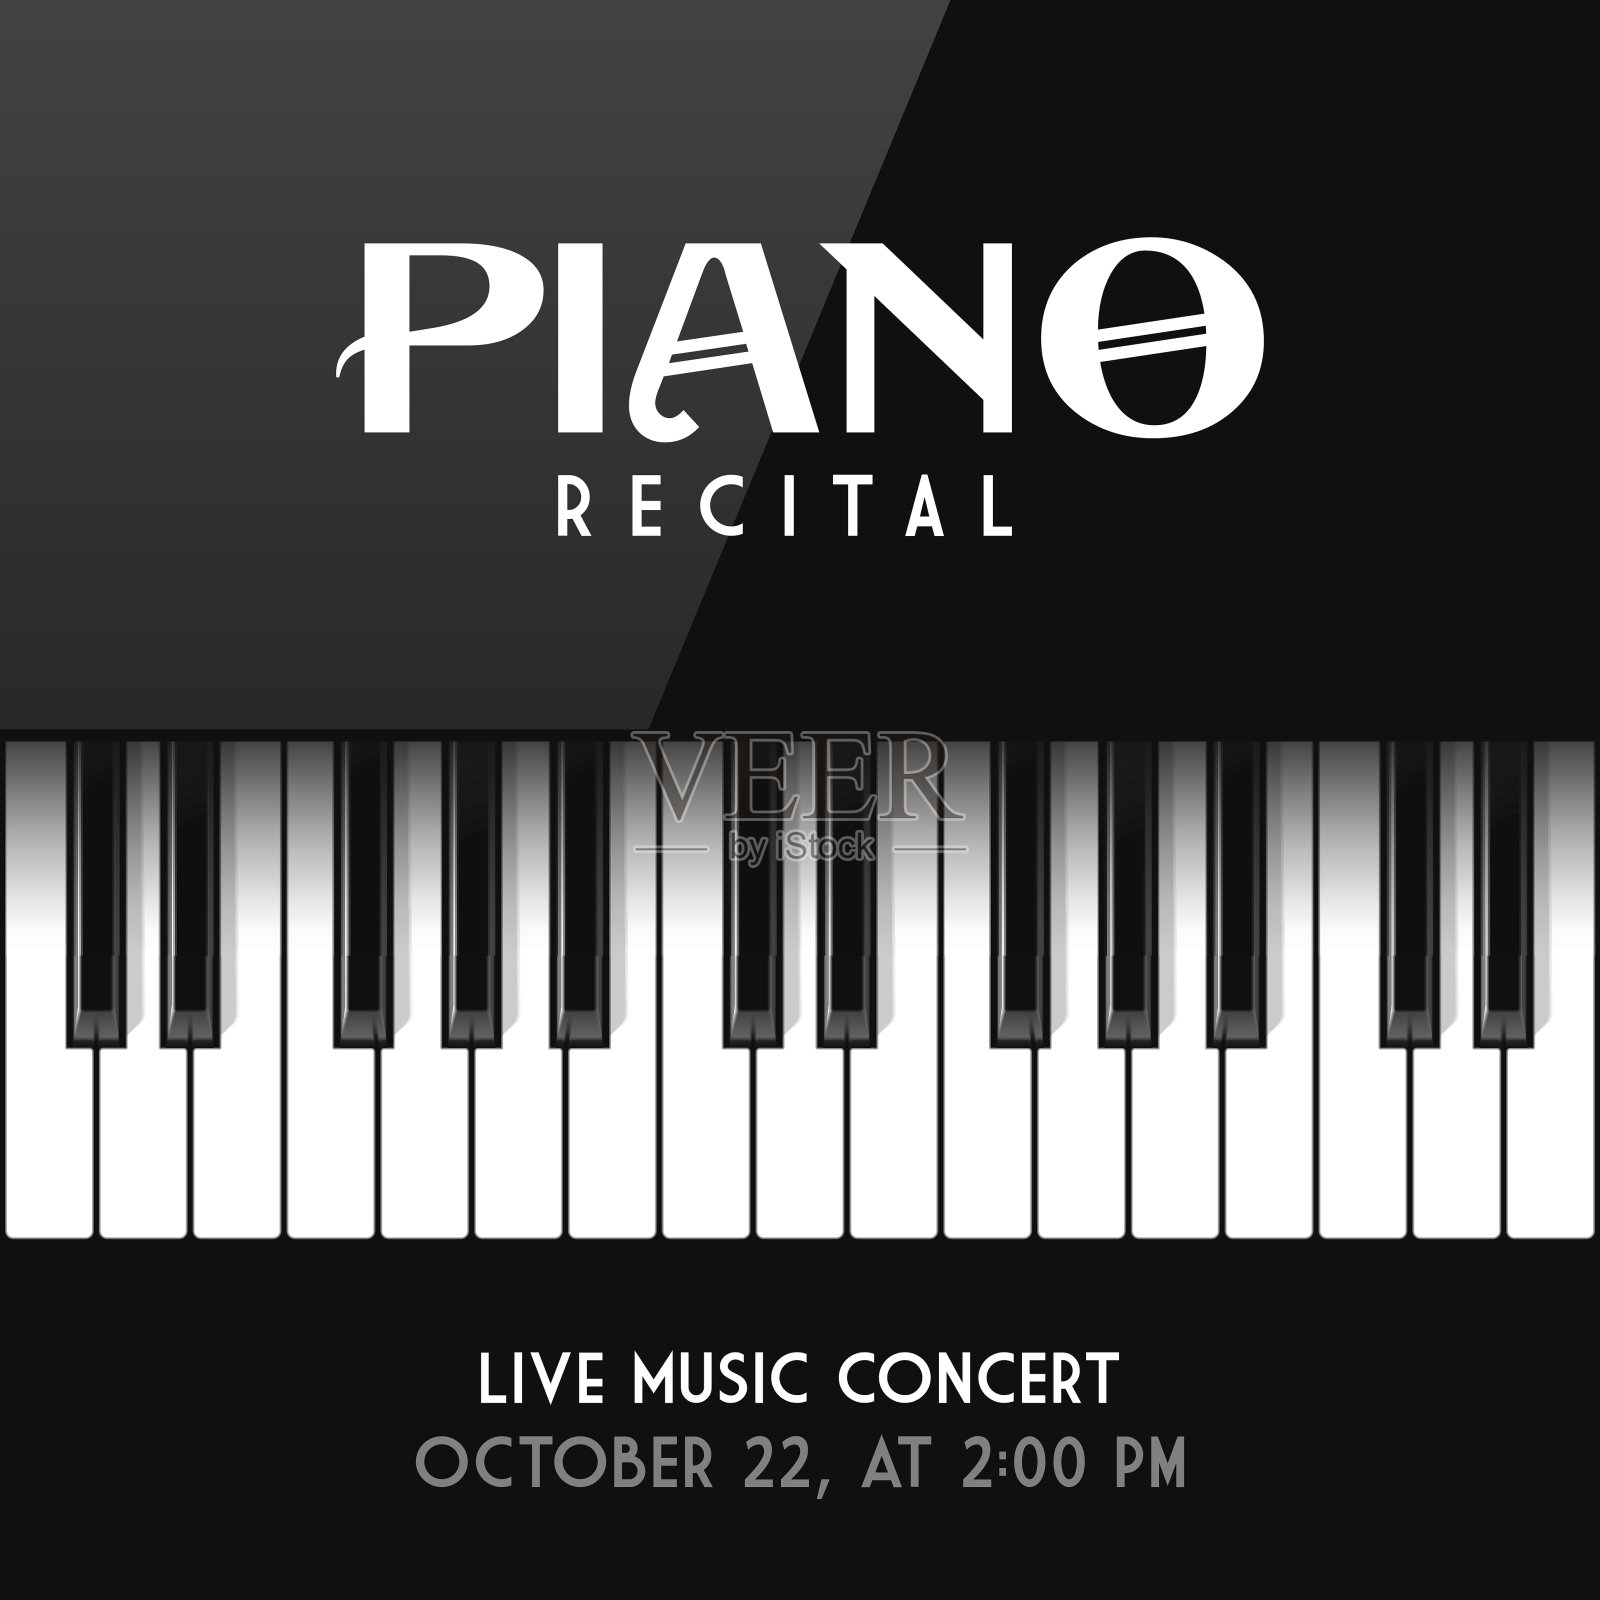 钢琴独奏会的海报设计元素图片